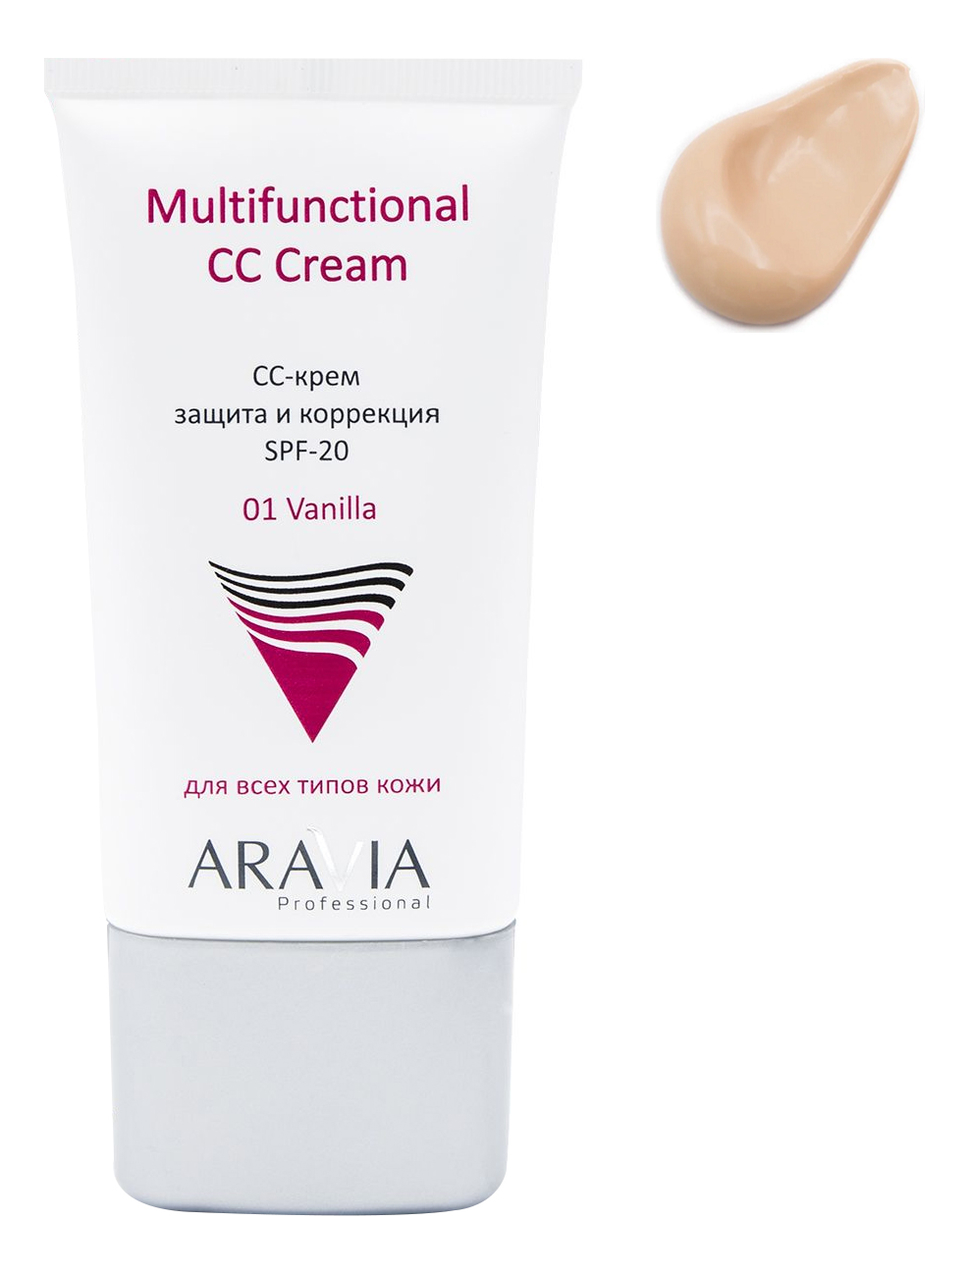 Купить CC-крем защитный Multifunctional CC Cream SPF20 50мл: Vanilla, Aravia